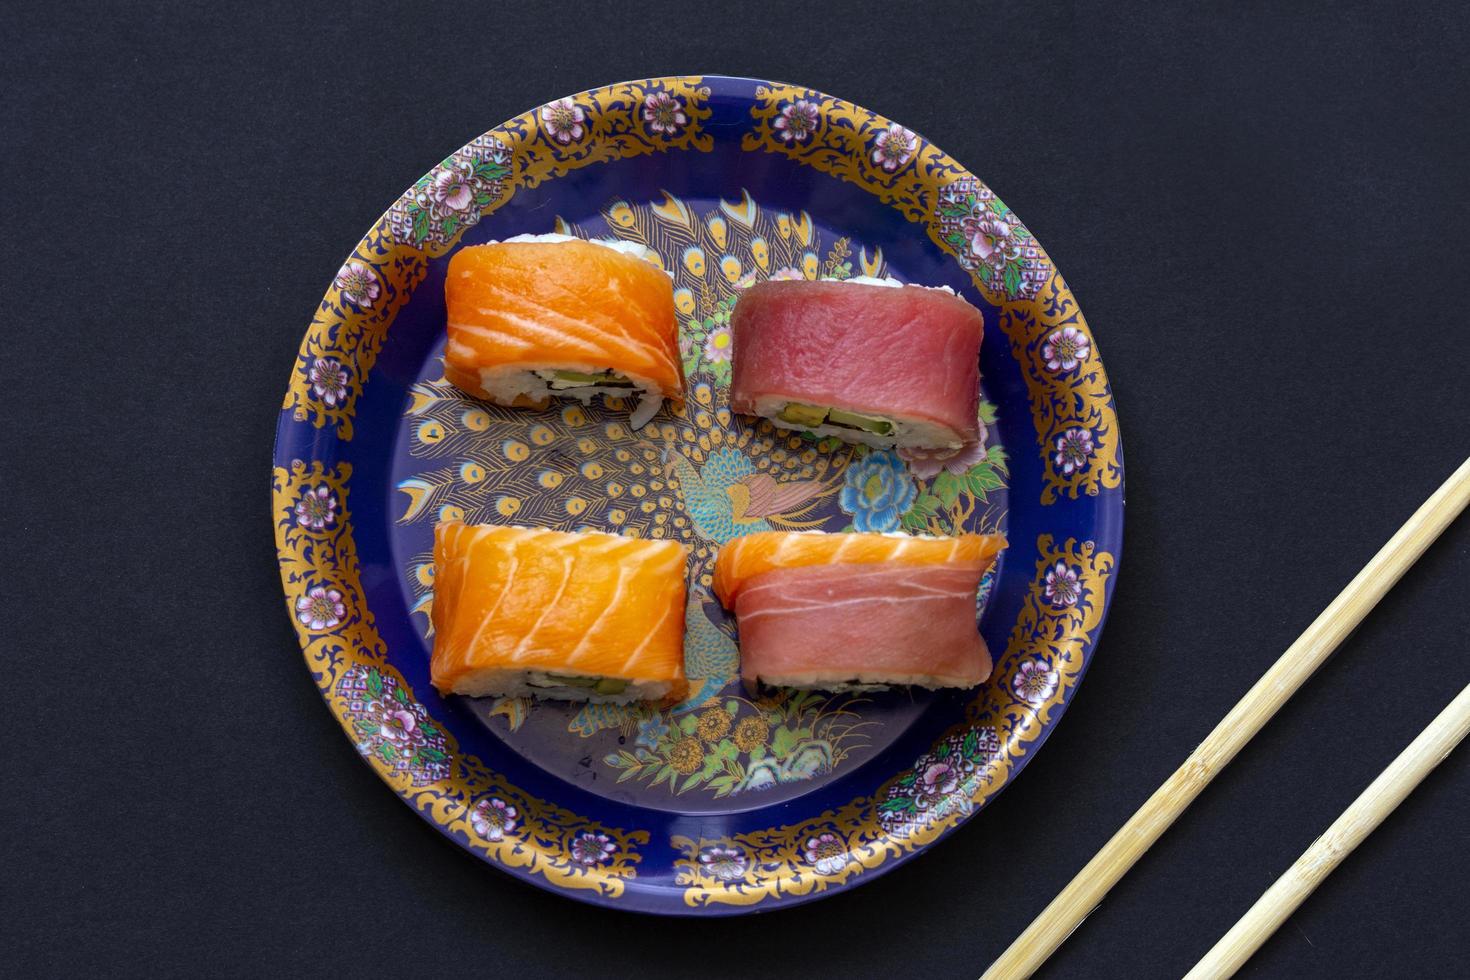 rolinhos de sushi da califórnia com abacate, pepino e queijo embrulhado em salmão e atum foto